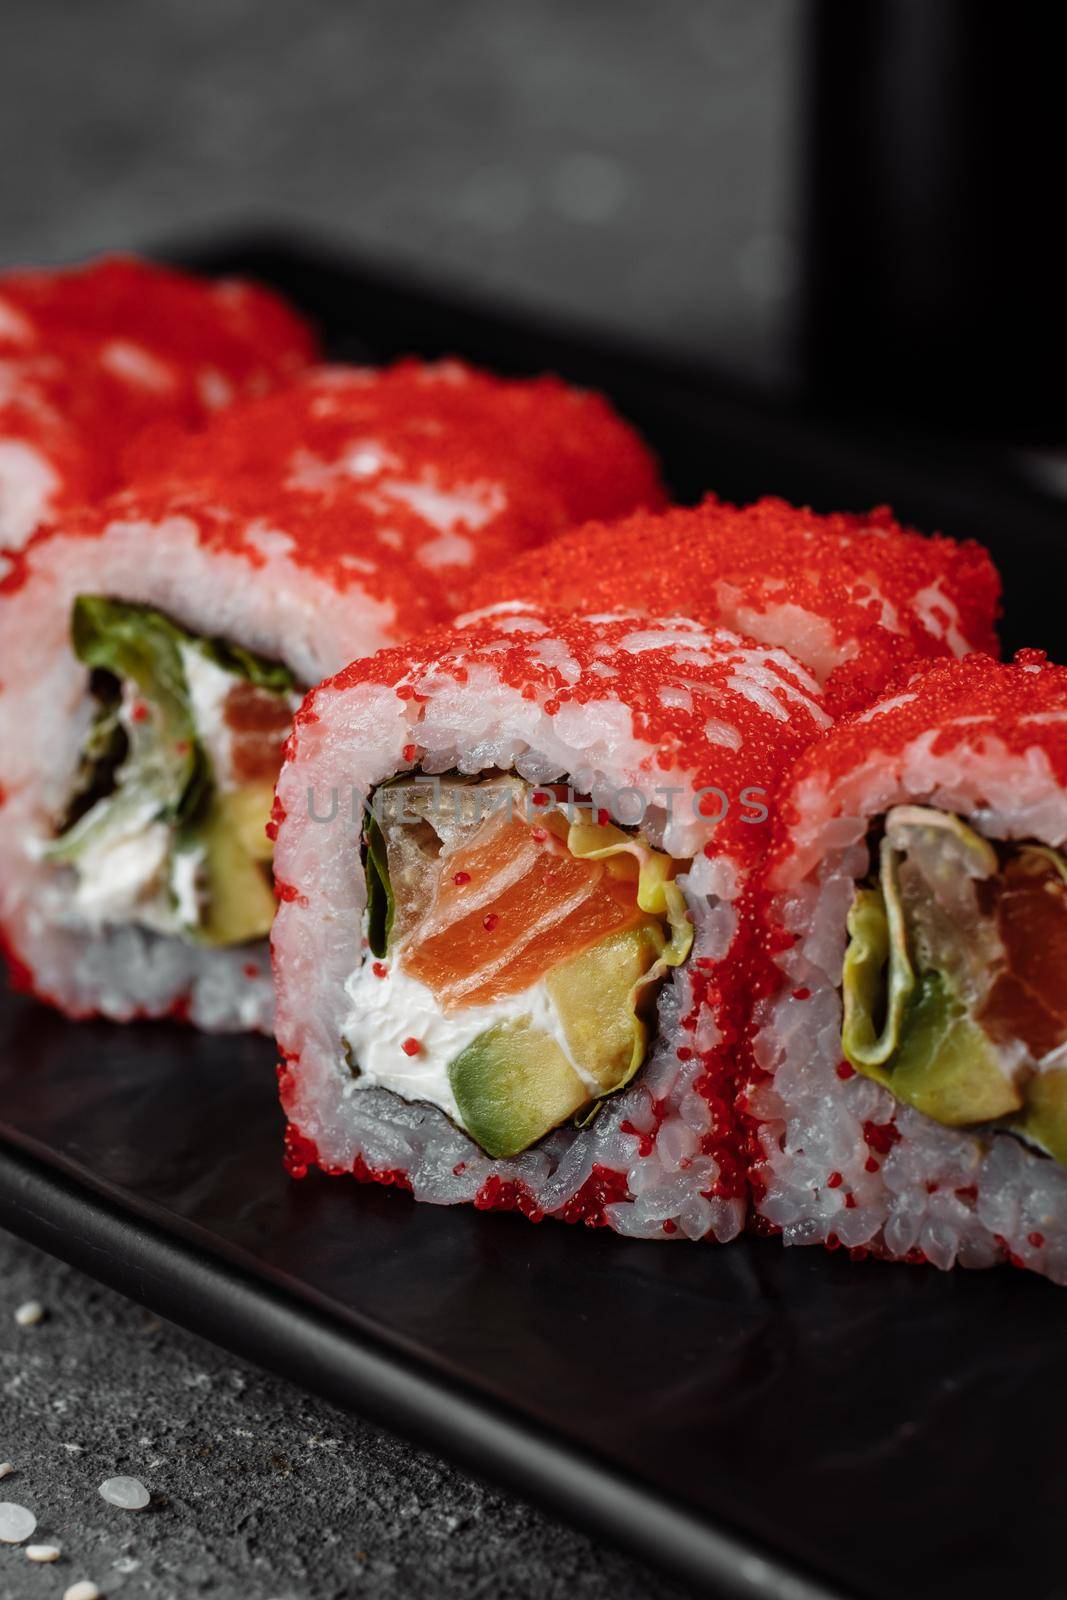 Sushi california roll with tuna in caviar.